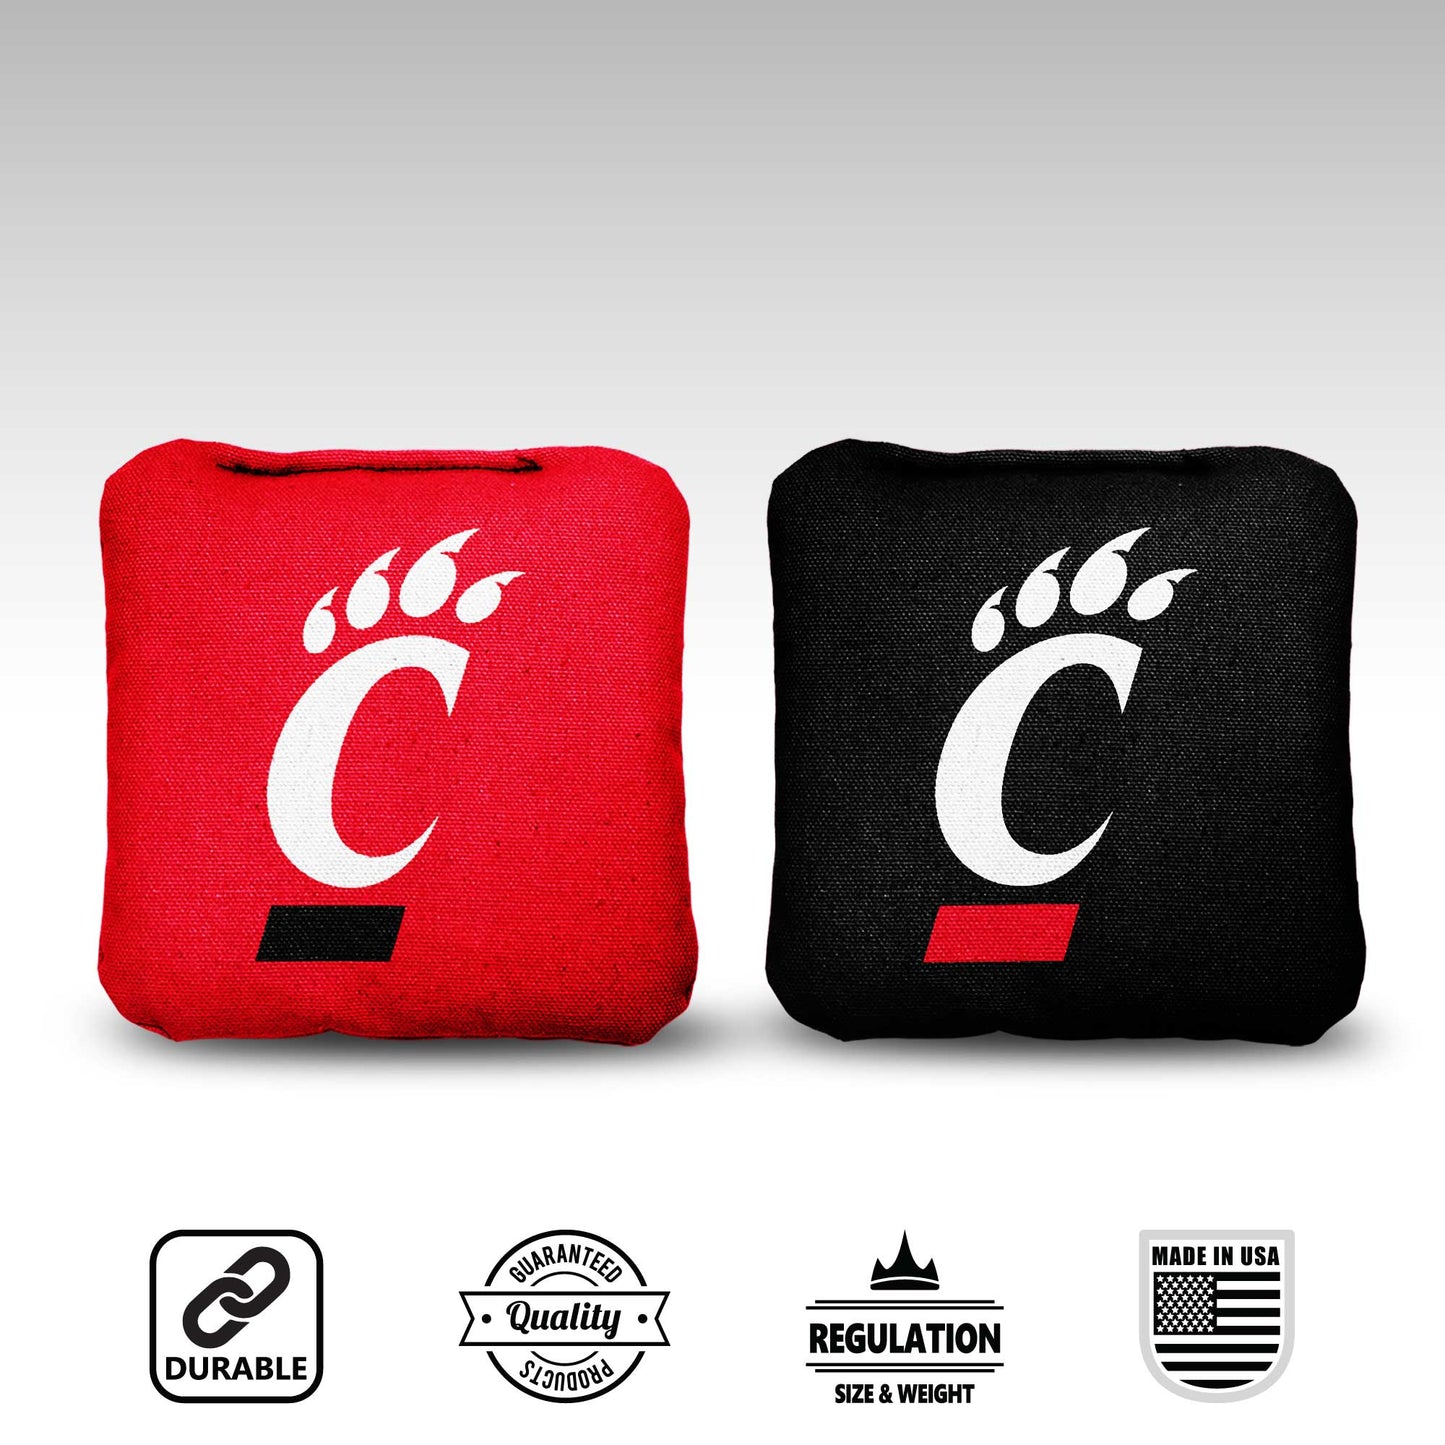 University of Cincinnati Cornhole Bags - 8 Cornhole Bags